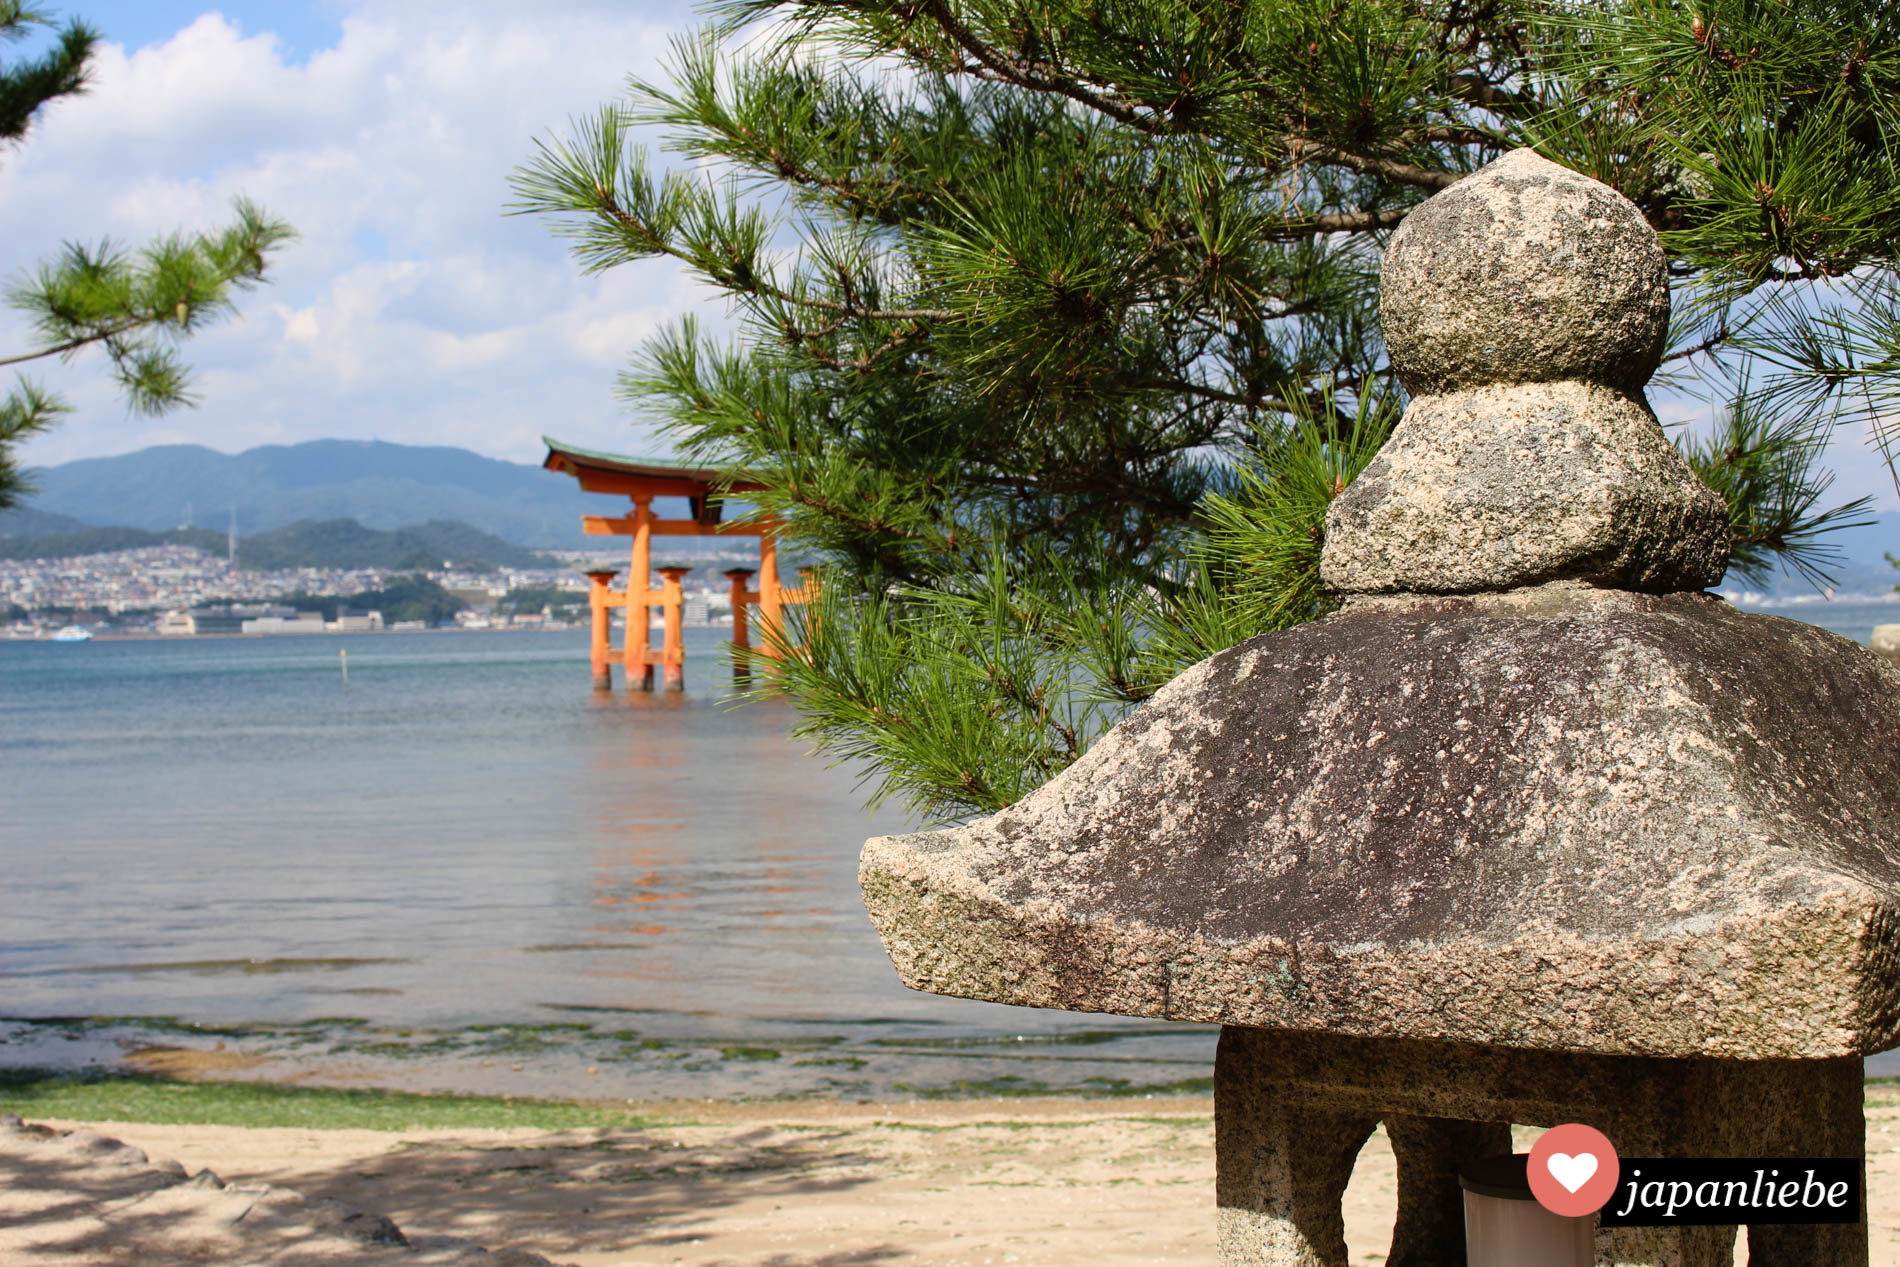 japans berühmtestes torii auf Miyajima vom Strand aus fotografiert, inklusive Steinlaterne im Bild.